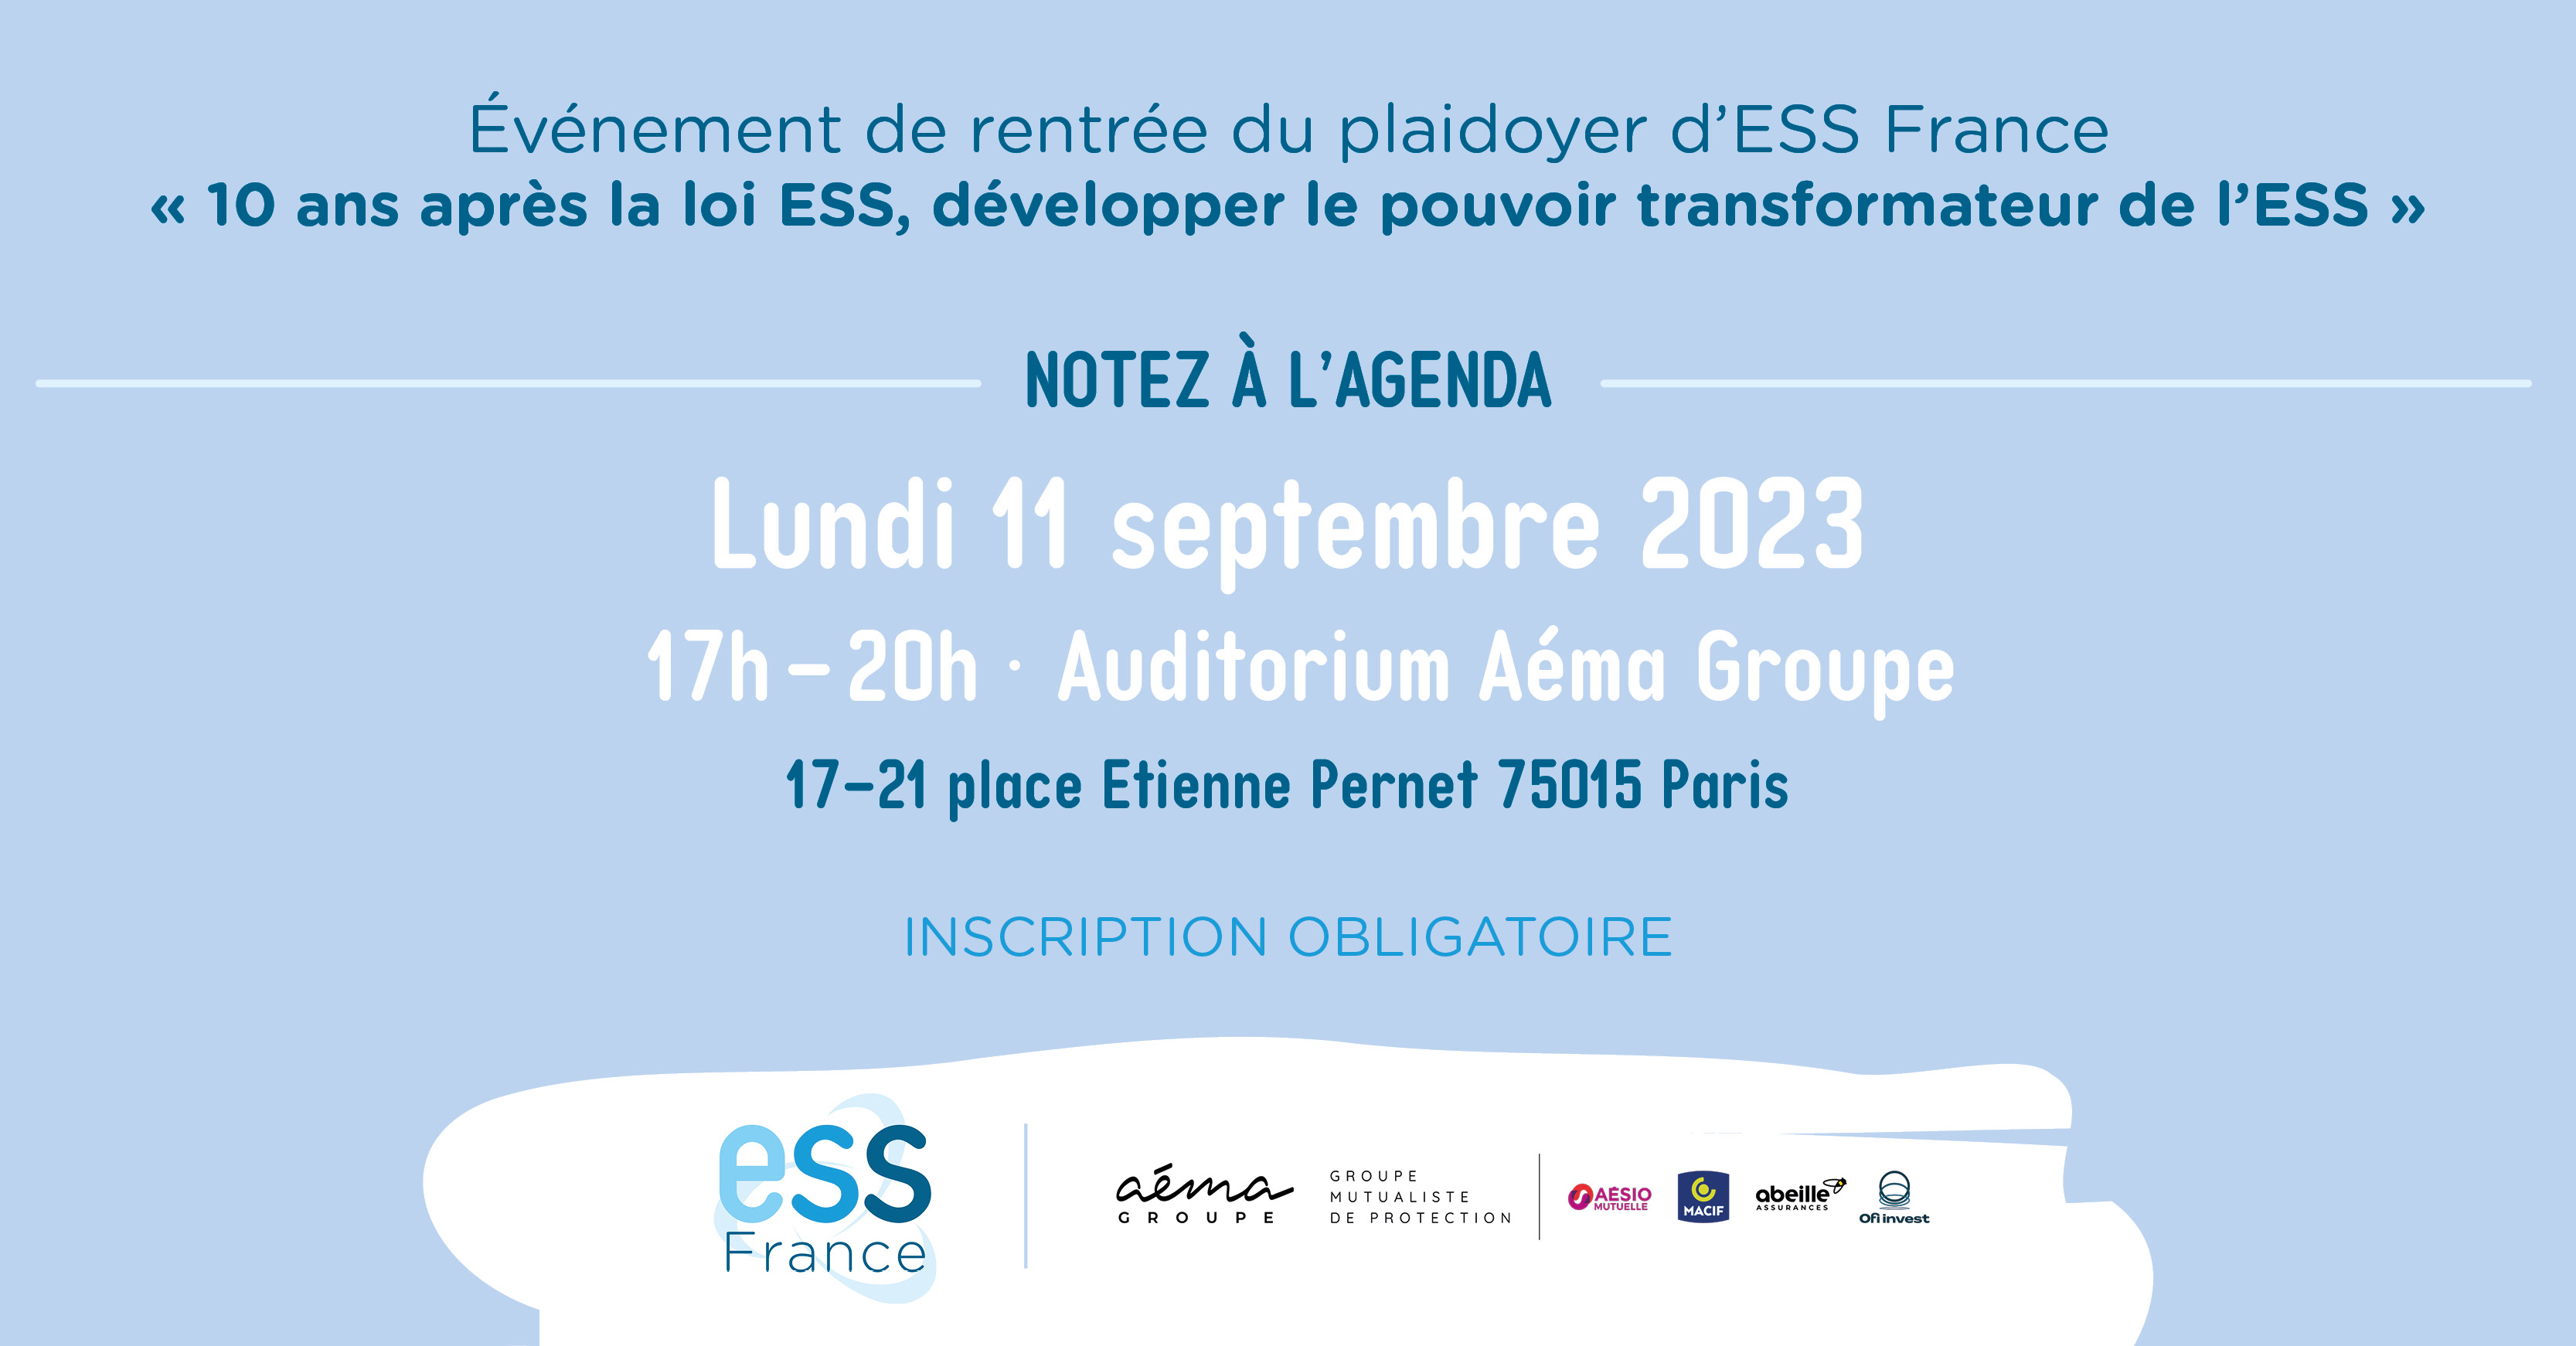 Visuel de l'événement de rentrée du plaidoyer d'ESS France le 11 septembre 2023 de 17h à 20h